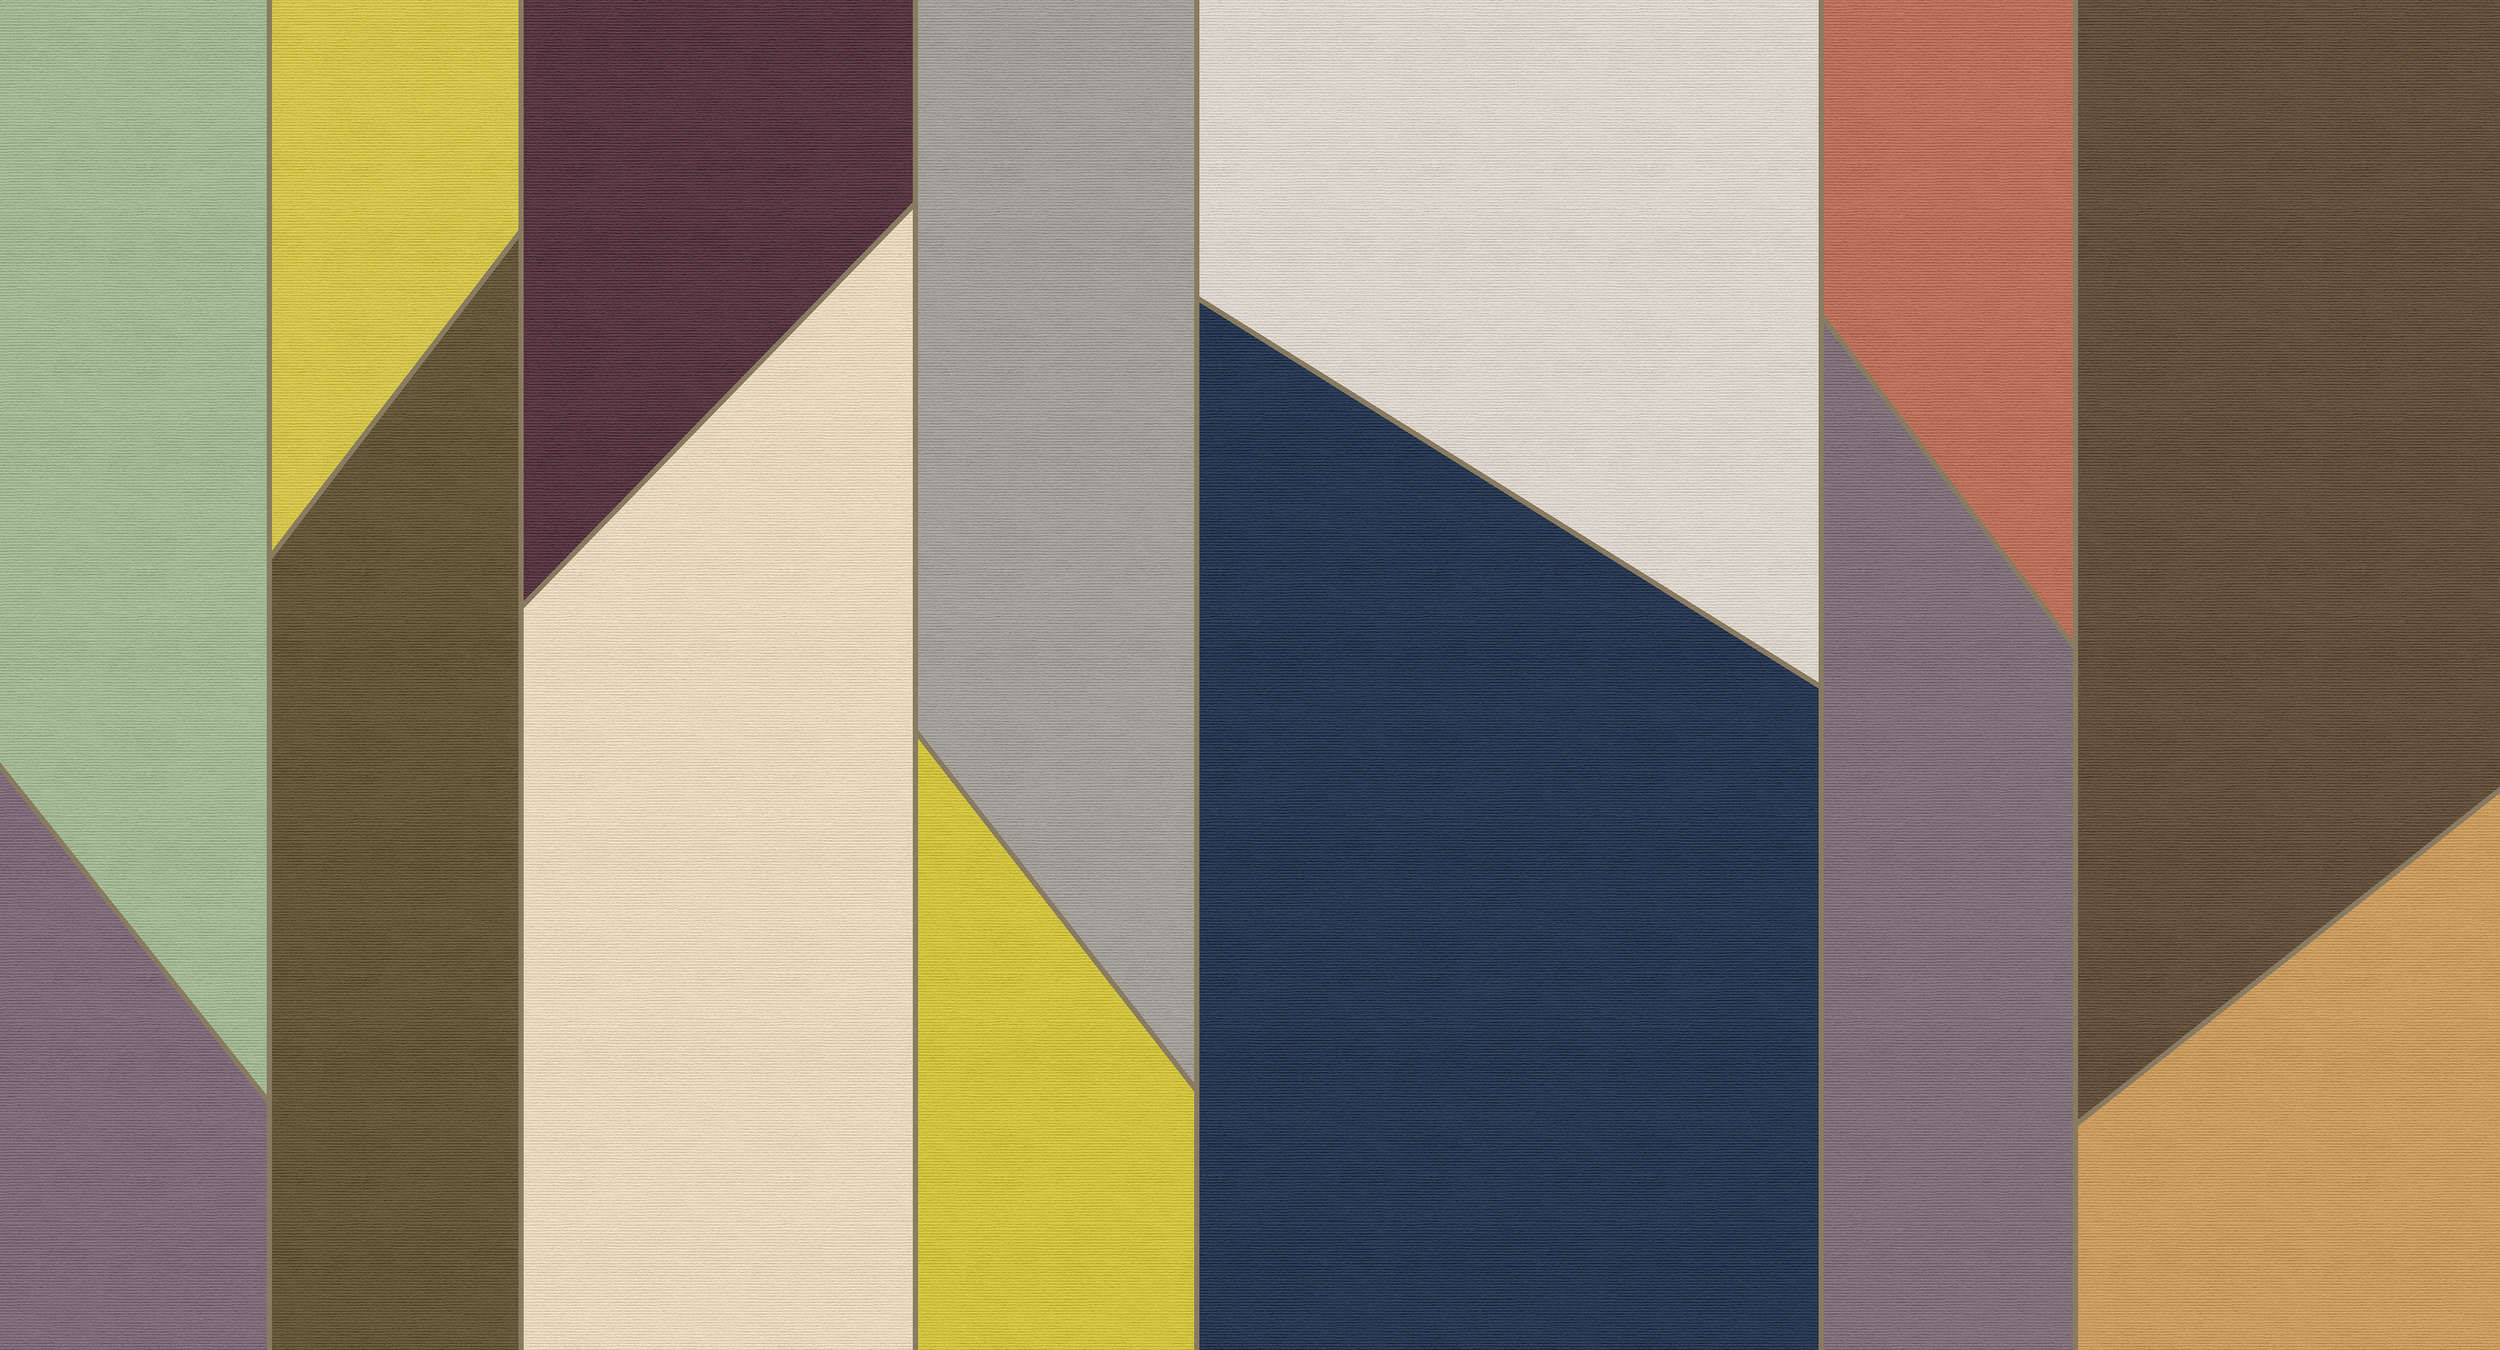             Geometry 4 - Papel pintado a rayas diseño retro colorido en estructura acanalada - Beige, Azul | Vellón liso Premium
        